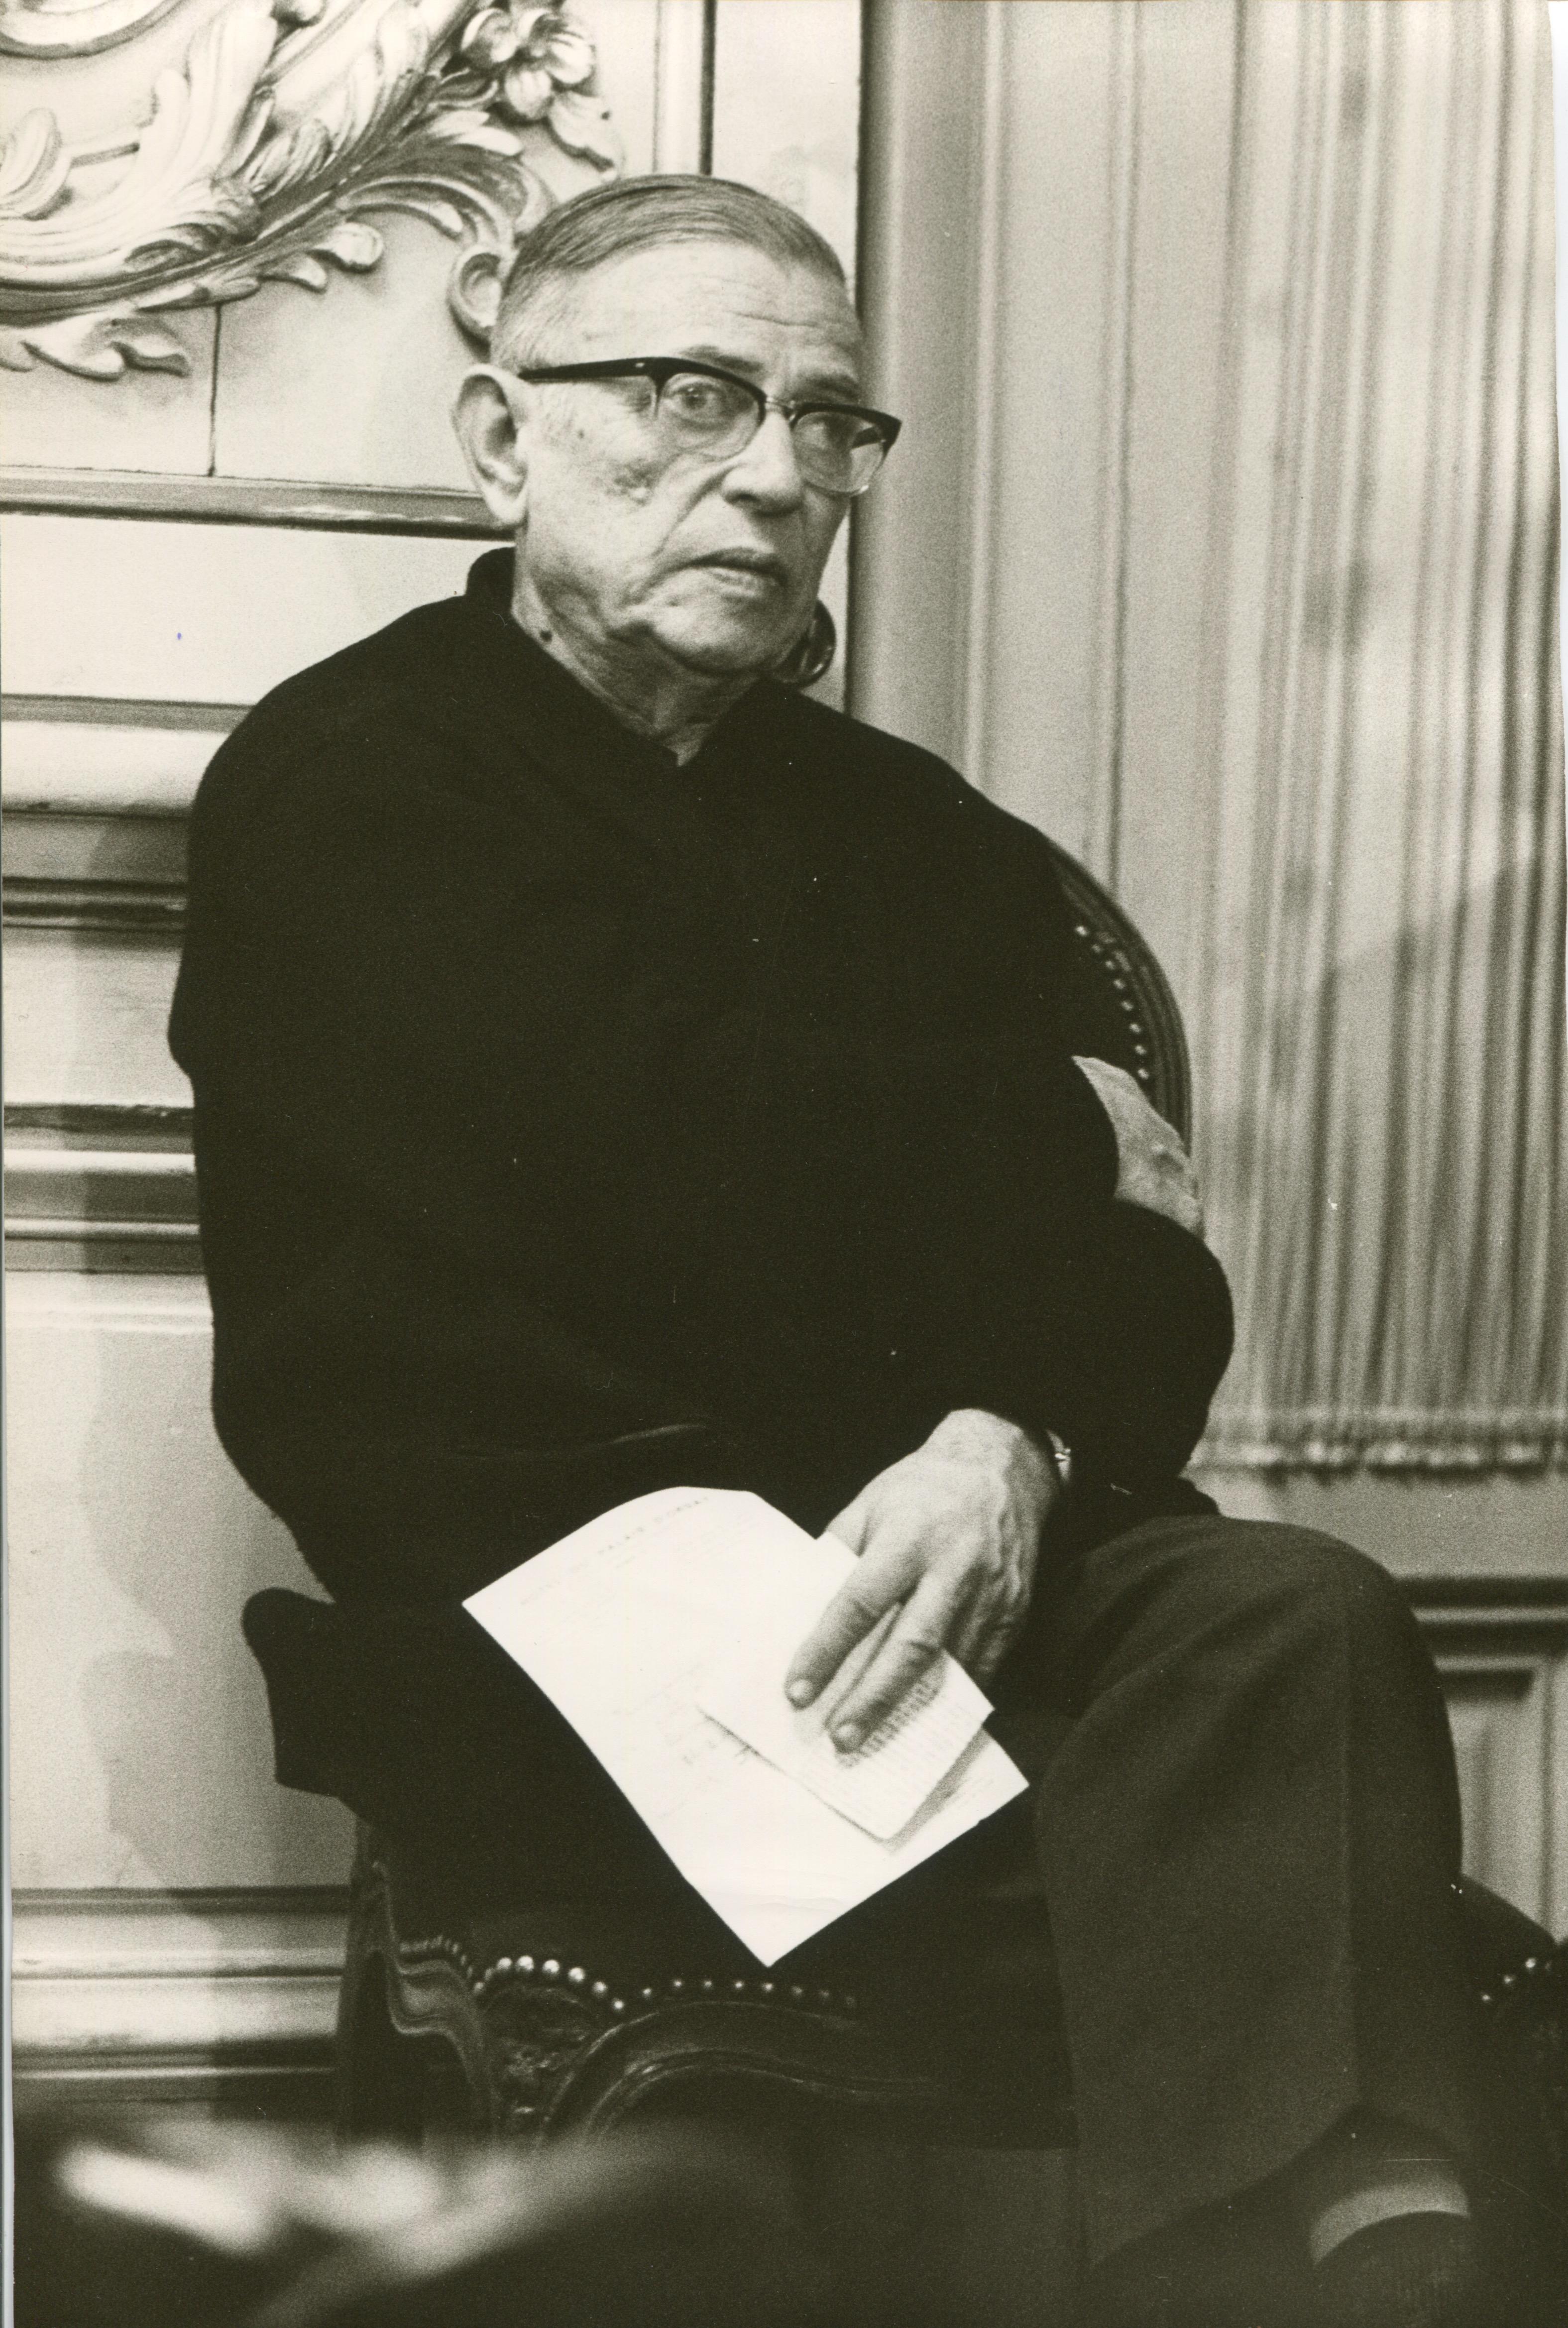 Unknown Portrait Photograph - Jean-Paul Sartre 1968